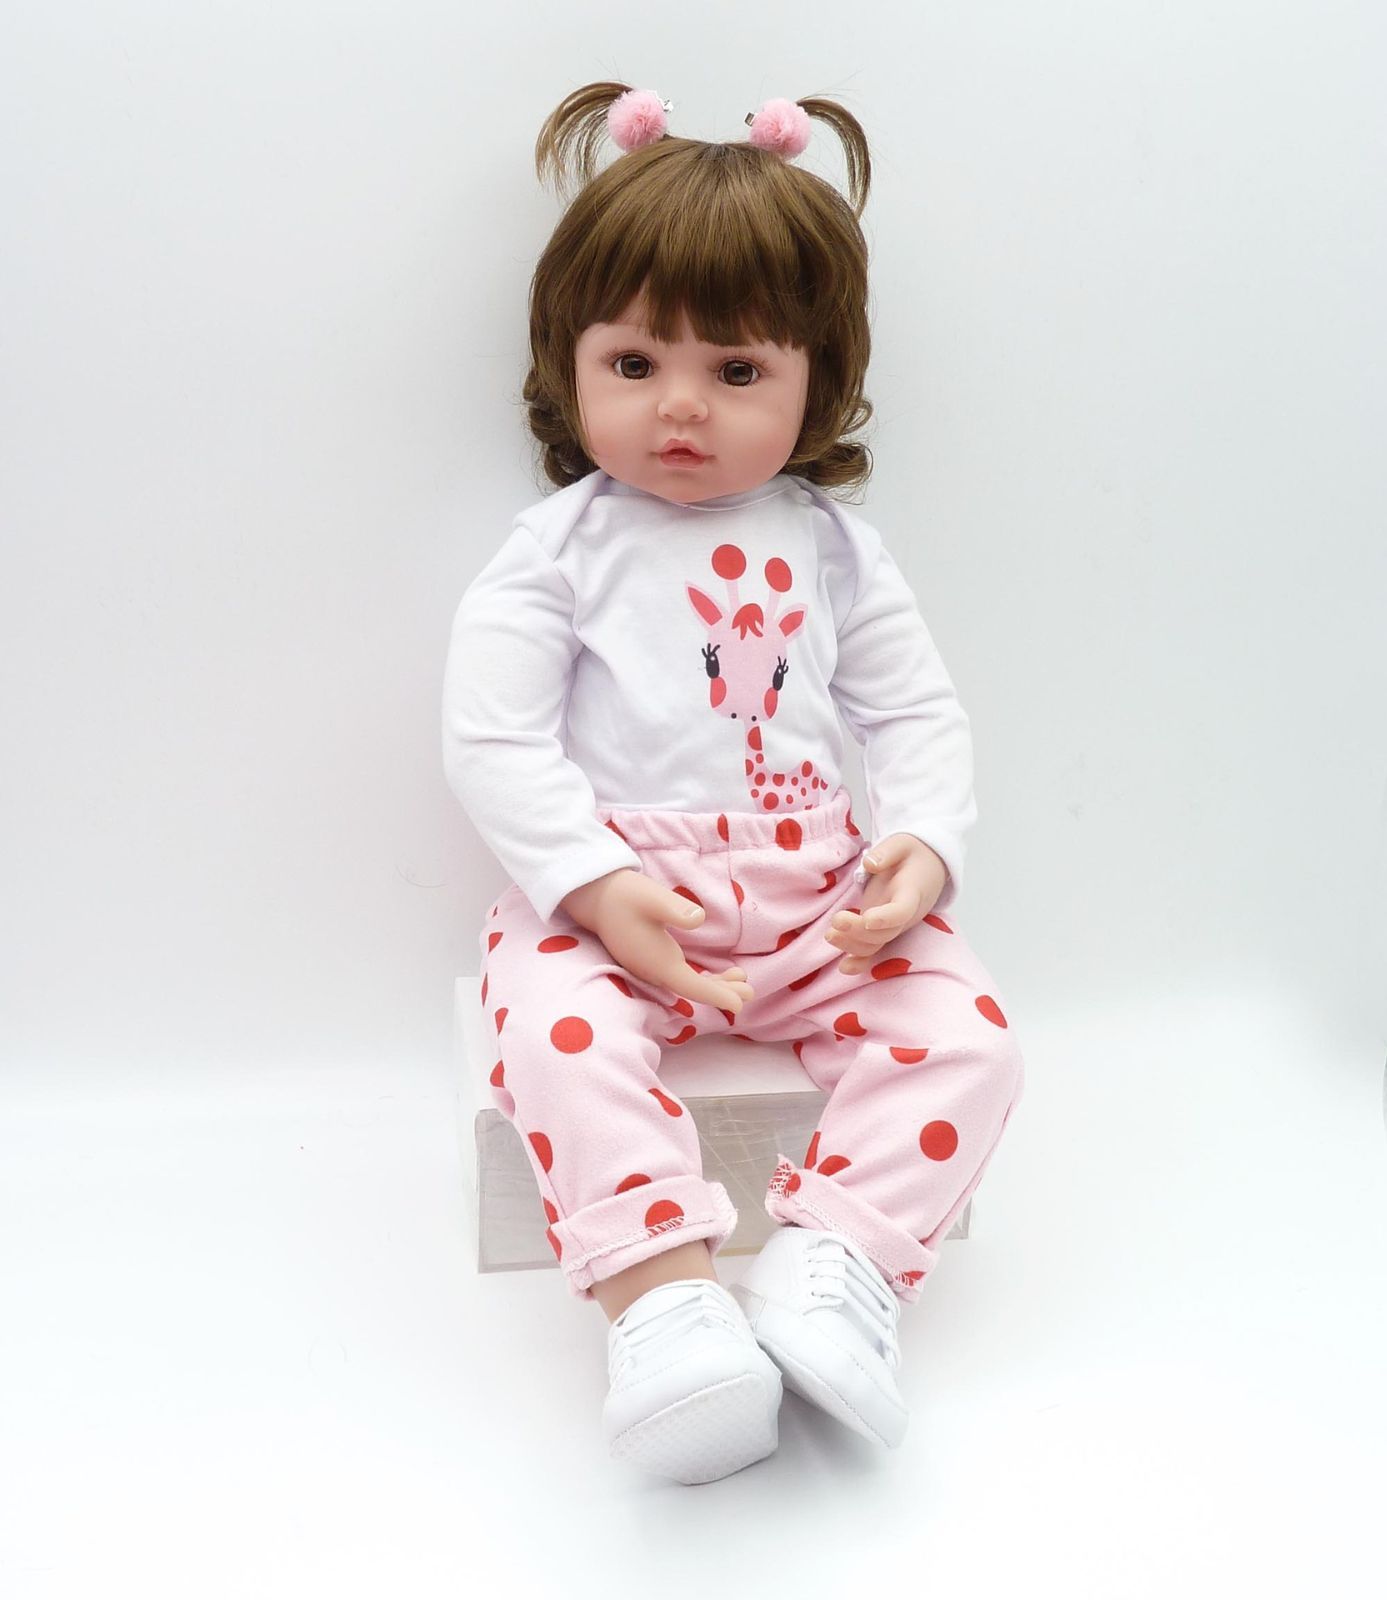 人形 赤ちゃん 人形 Reborn Doll 48cm 赤ちゃんリボーンドールデビュー フルシリコンドール ビニールリアル  シリコンリボーンベビードールベビードール 赤ちゃん人形女の子プリンセス服手作りのクリスマスの誕生日プレゼント 最高な贈り物でしょう